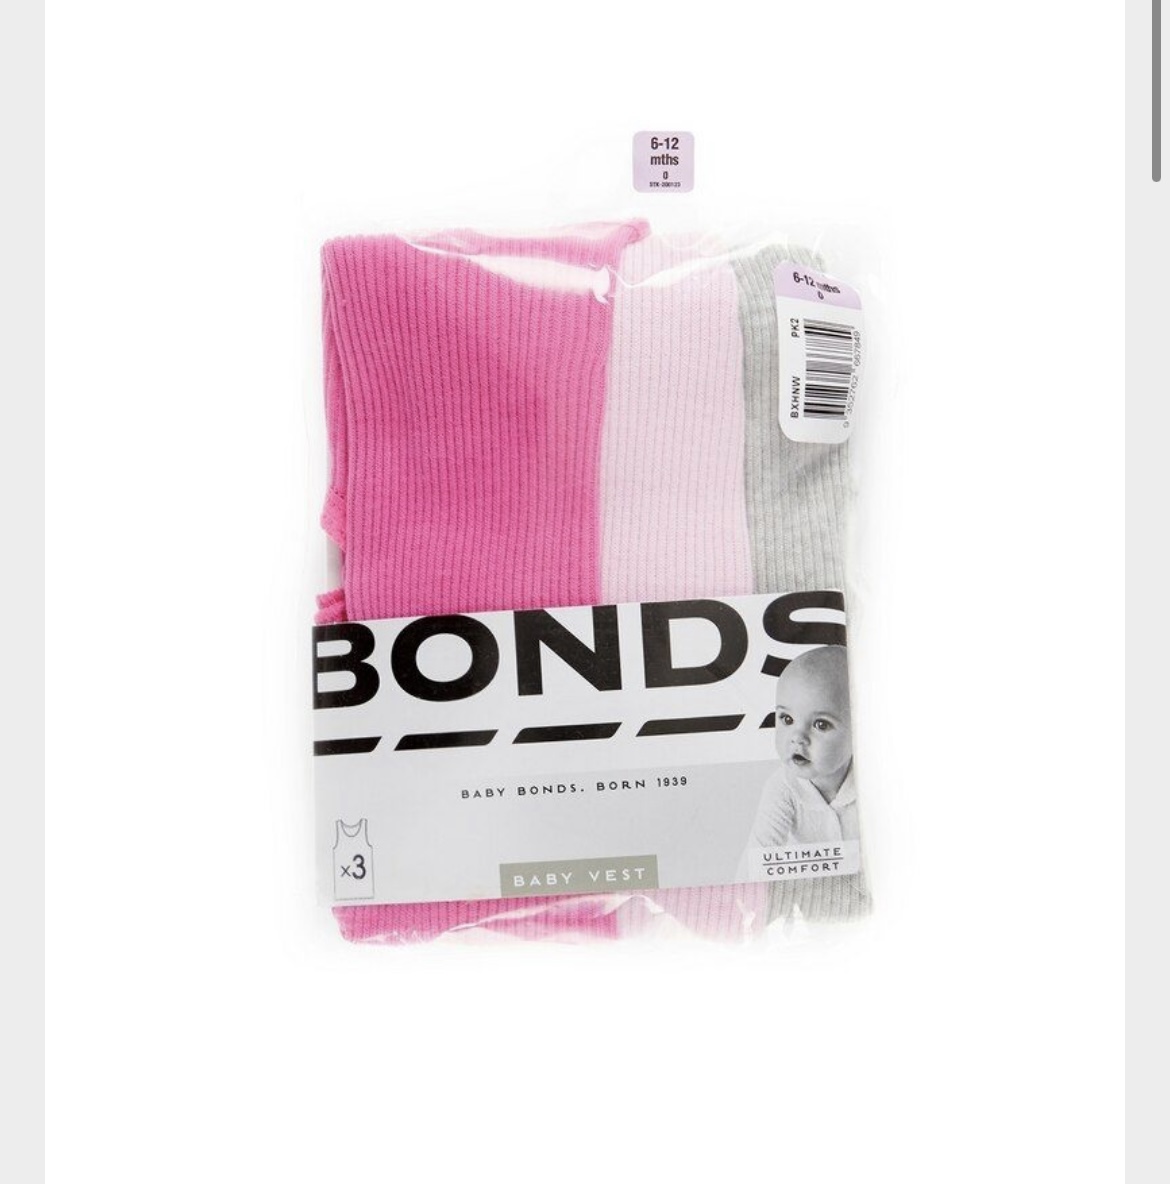 Bonds singlets